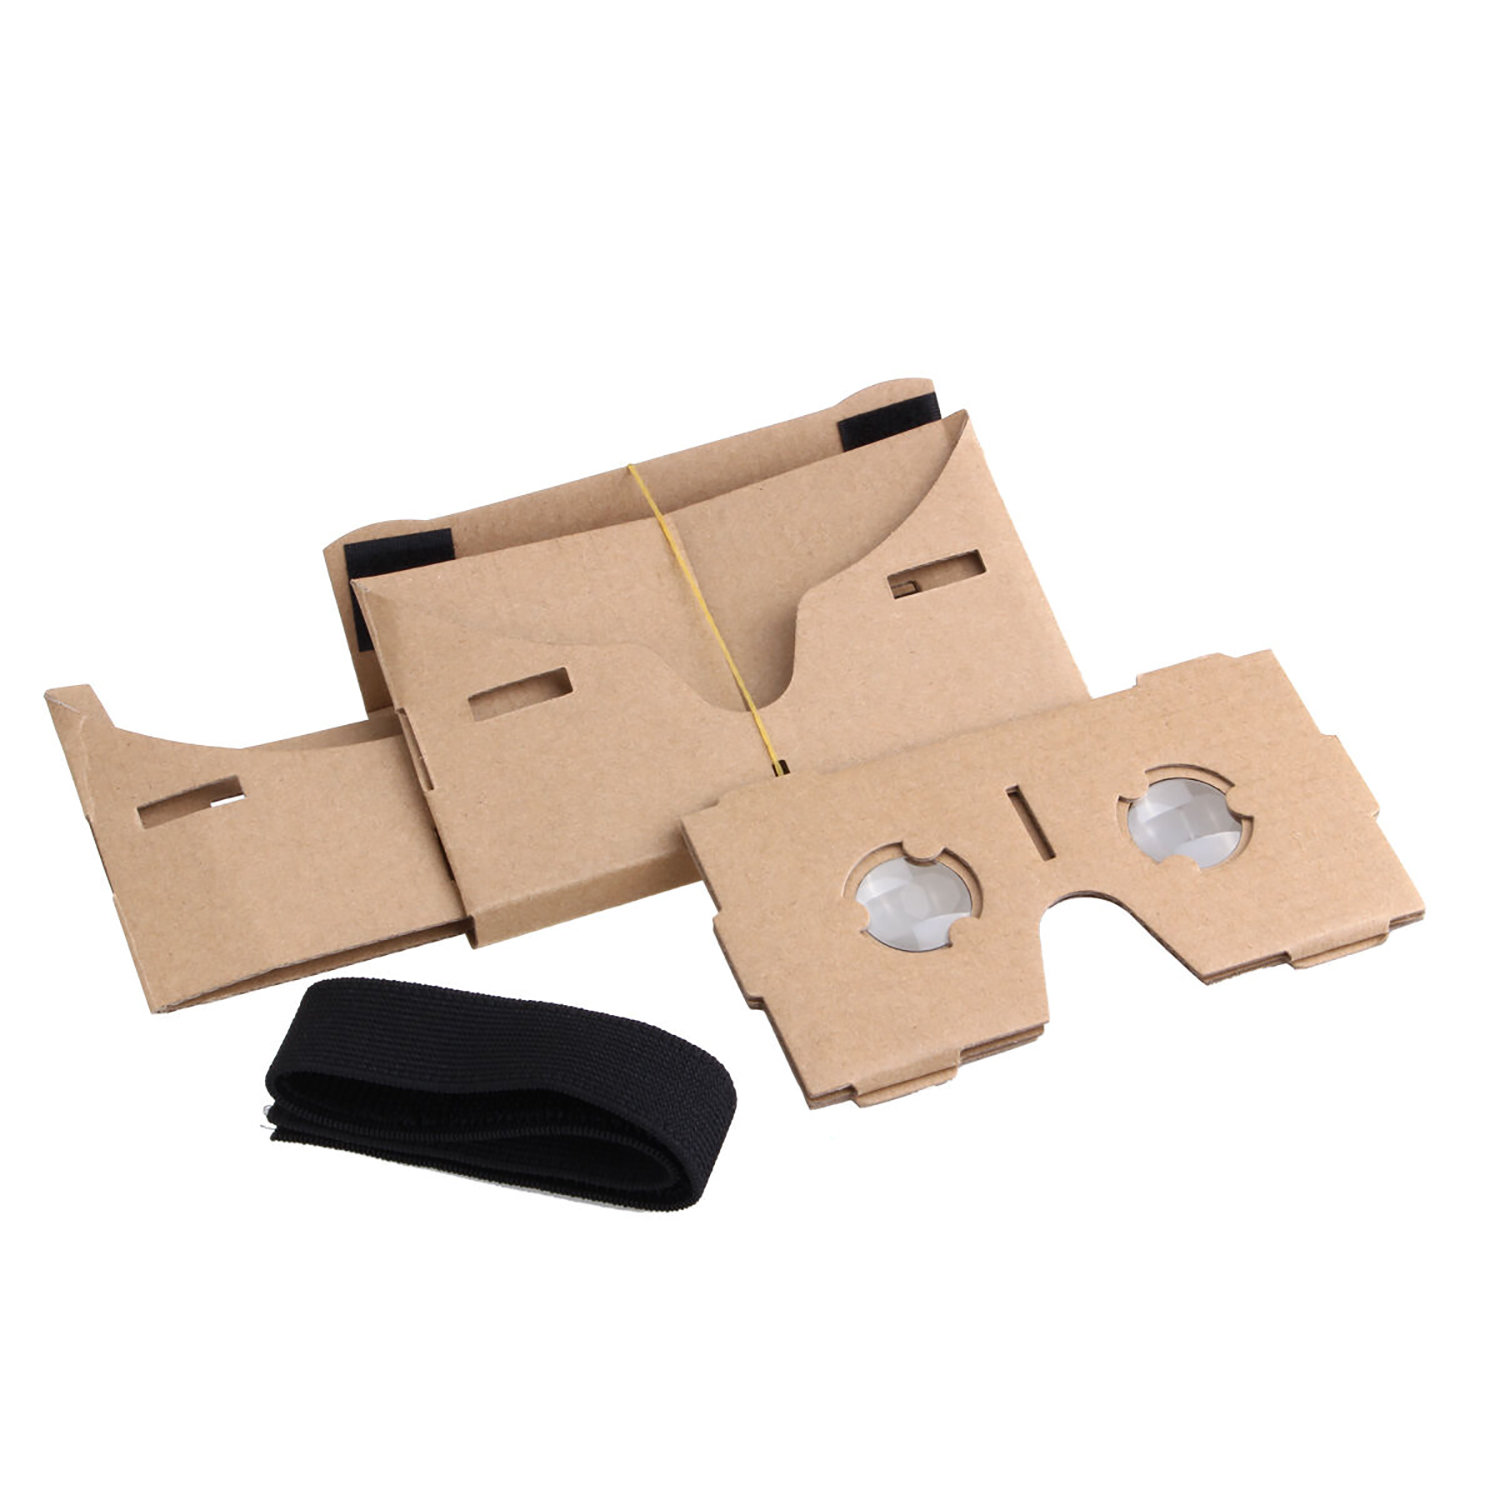 I AM Cardboard VR Cardboard Headset Kit V1